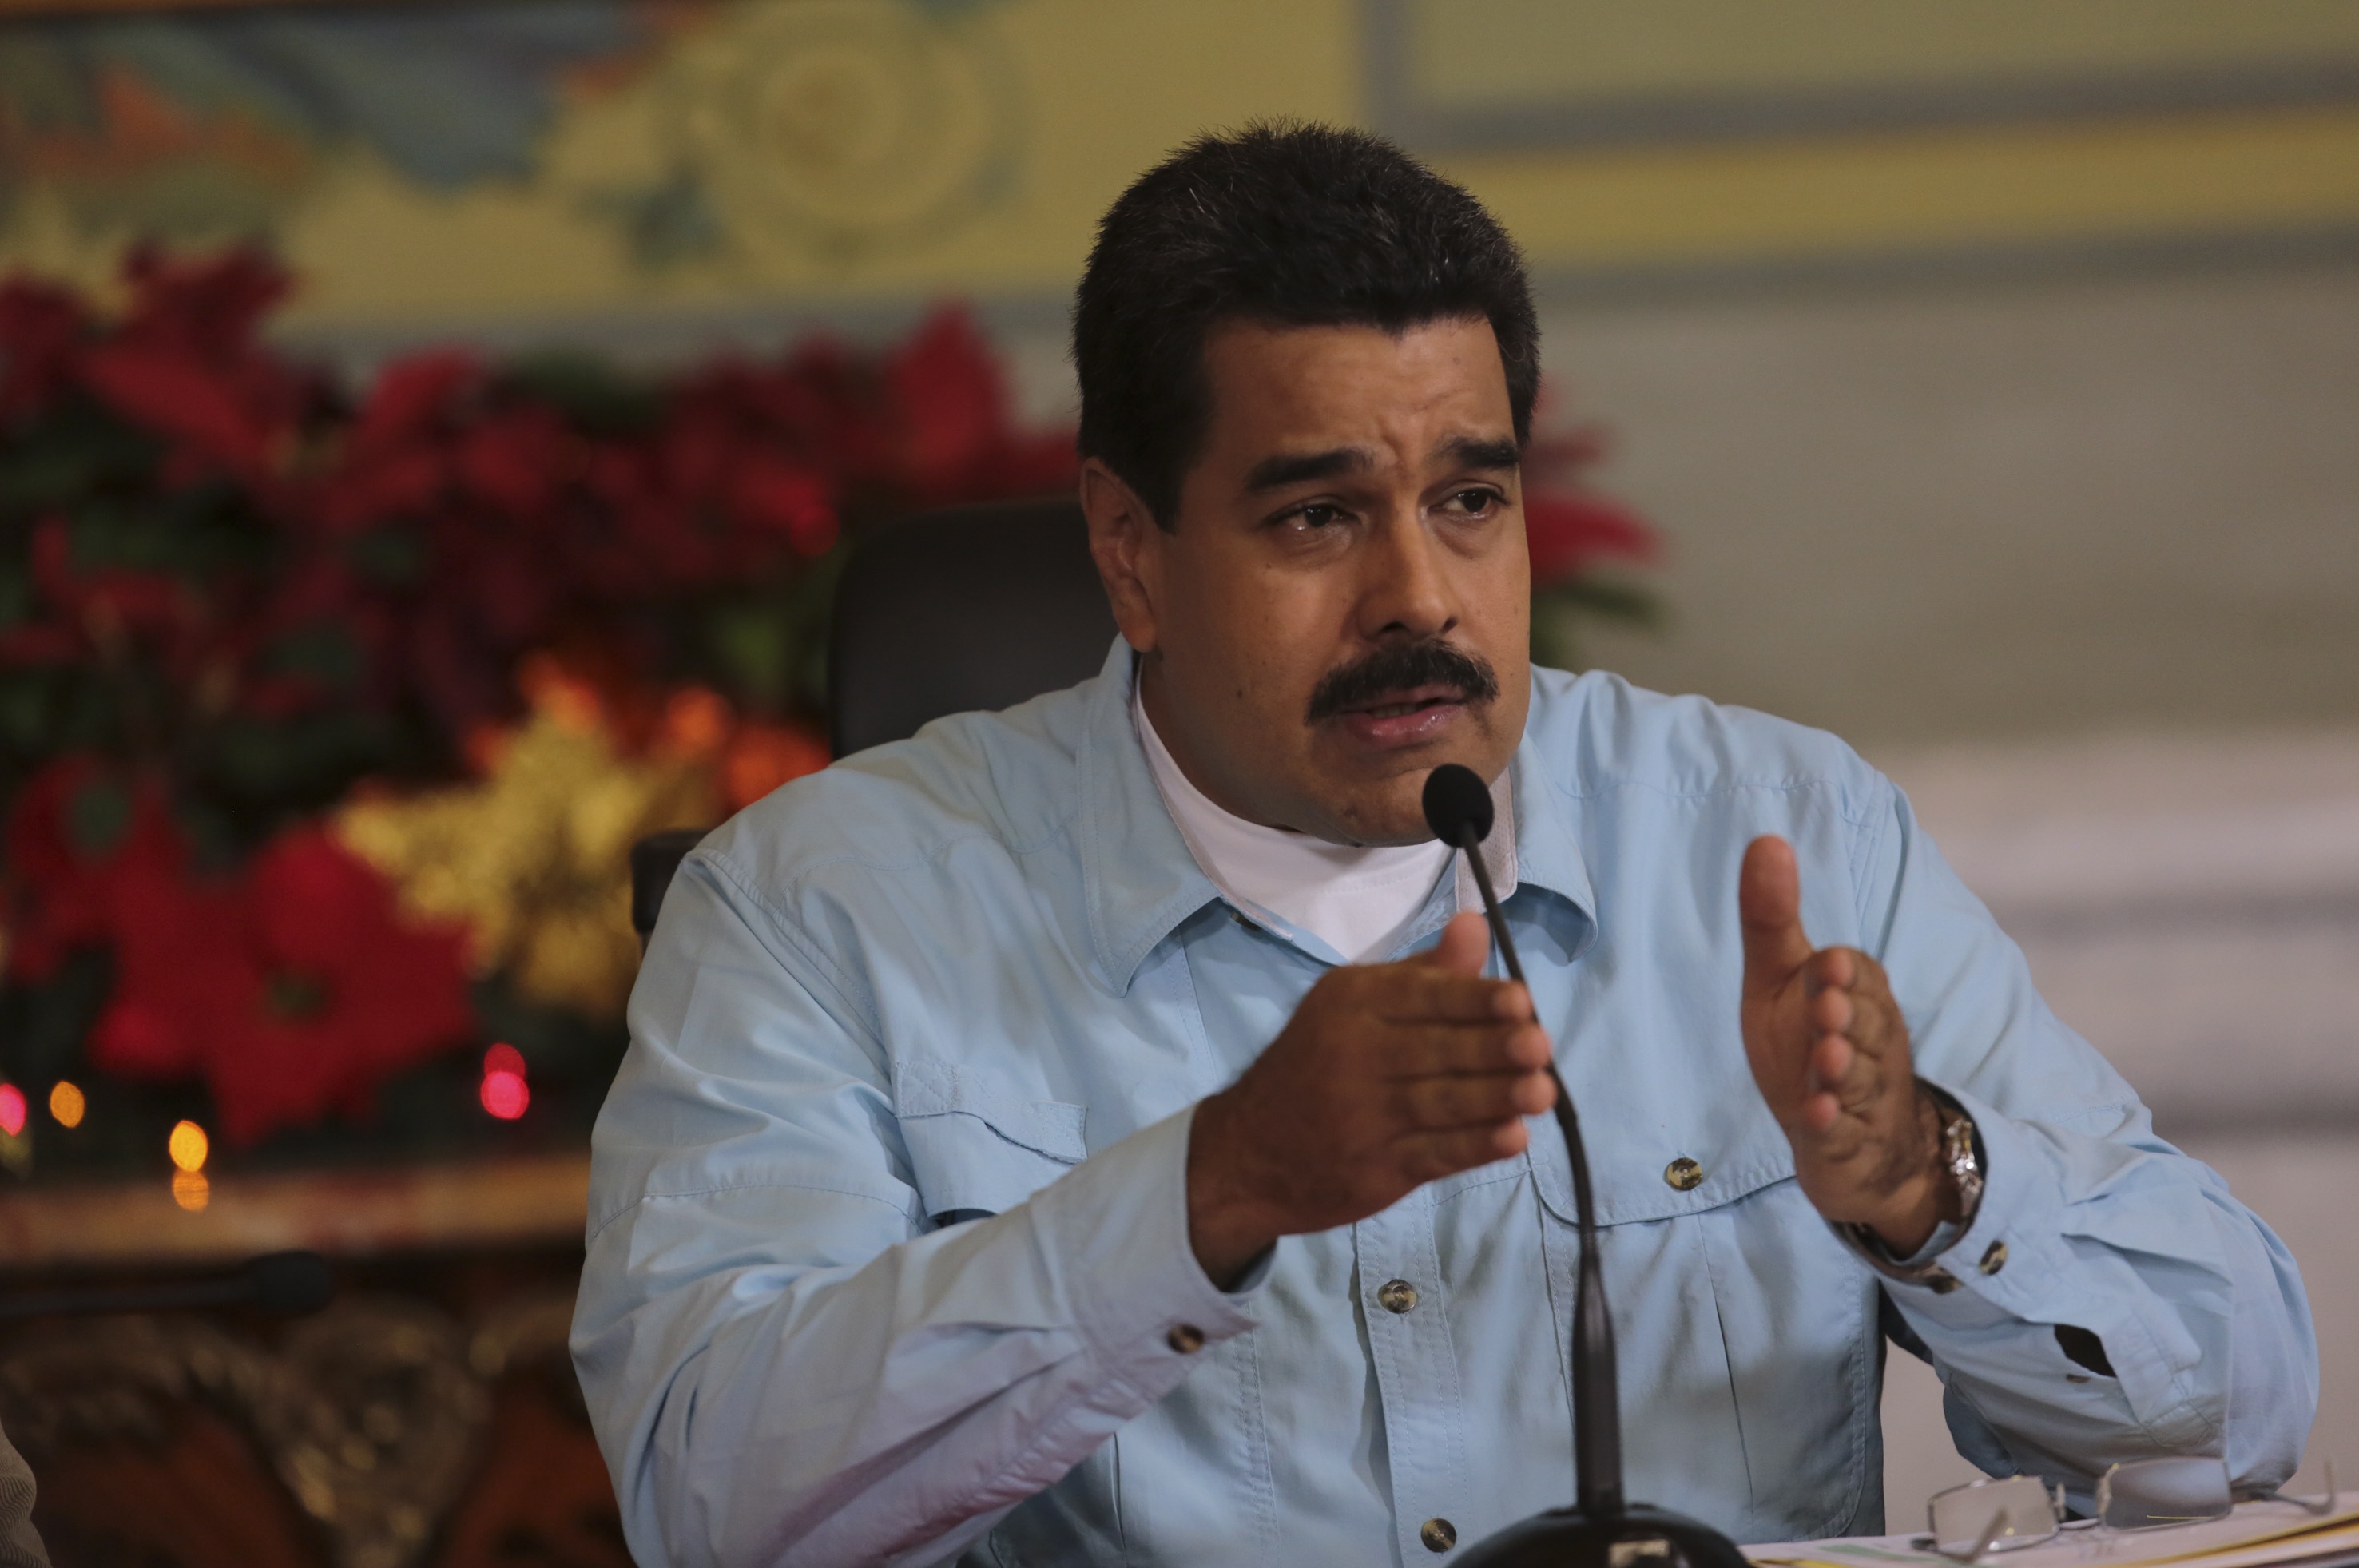 El chavismo trata de blindarse con nombramientos inconstitucionales